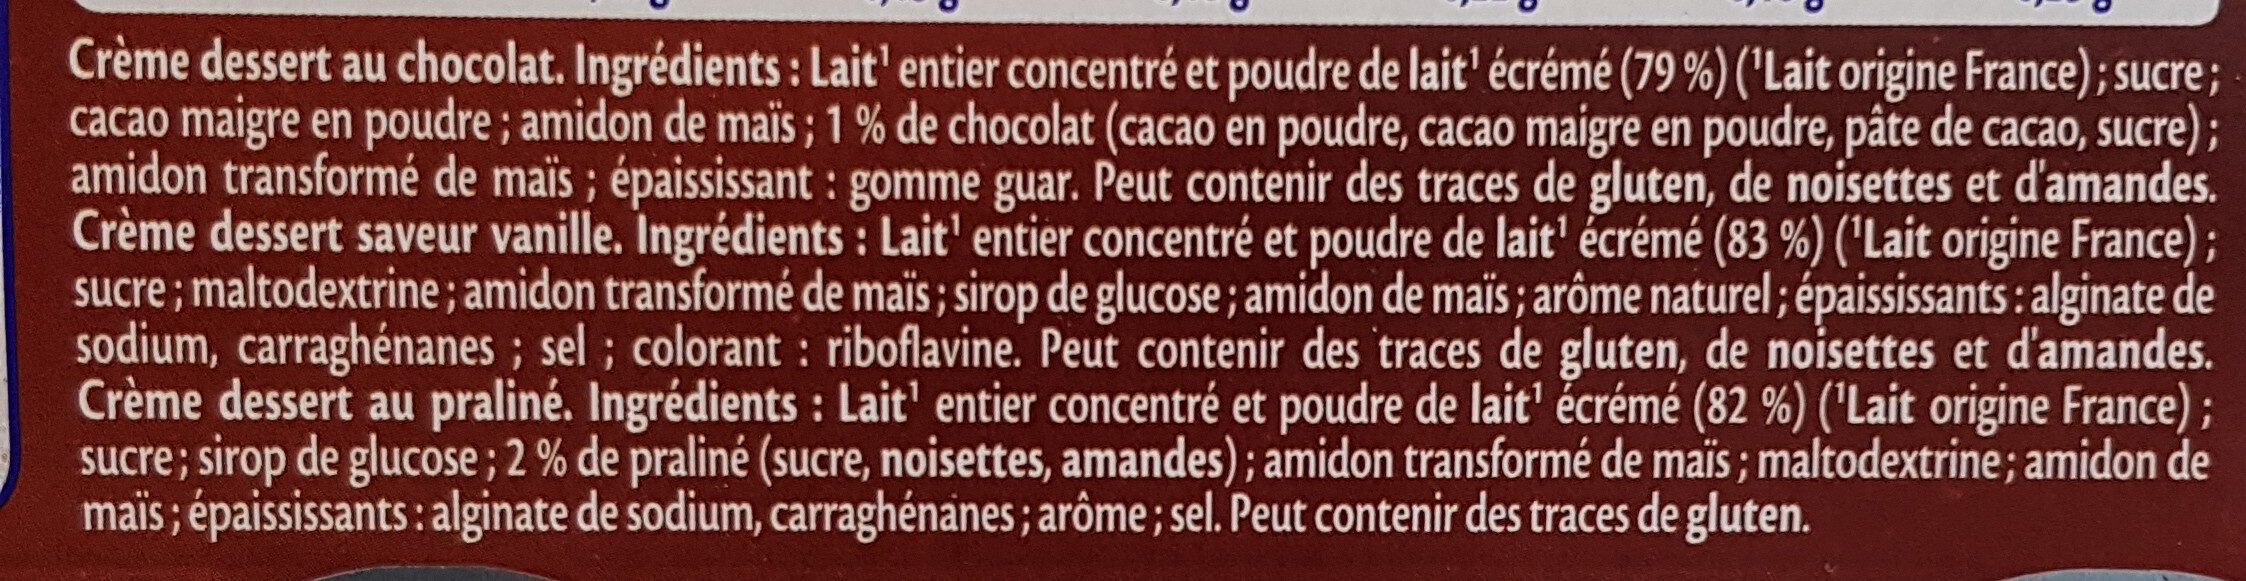 MONT BLANC Crème dessert Coupelles Chocolat, Sav Vanille, Praliné 6x125g - Ingrédients